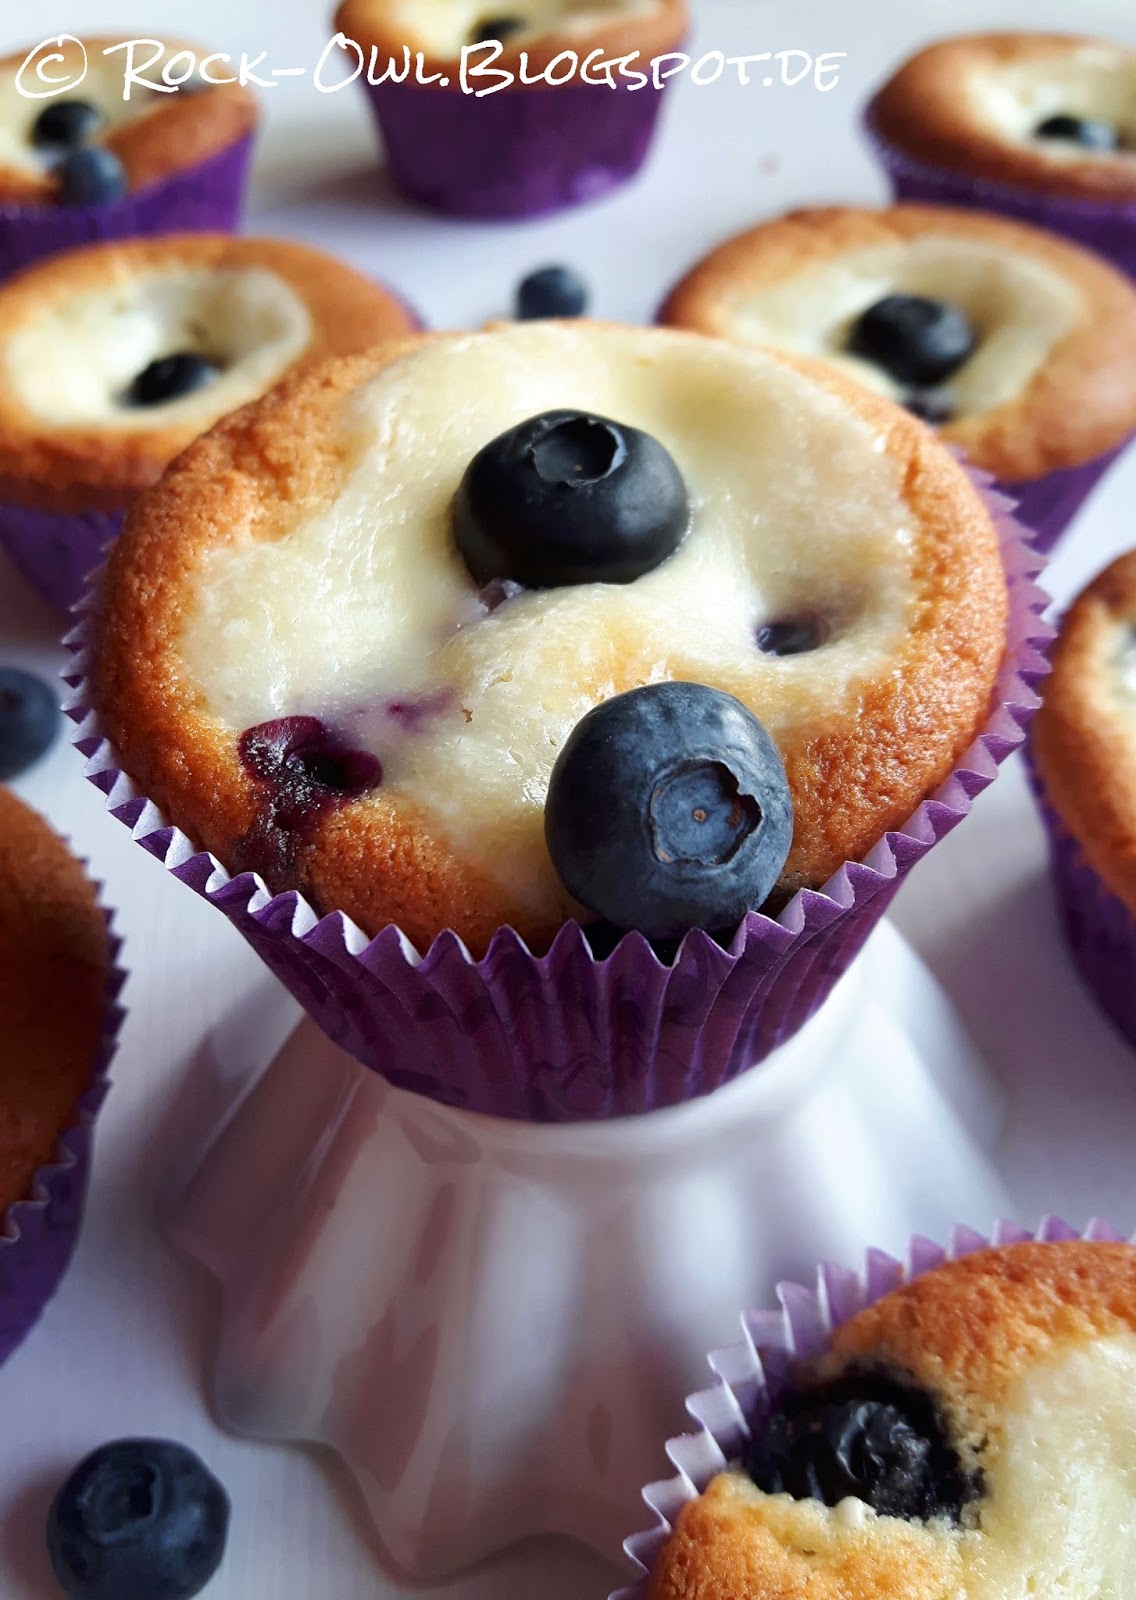 Rock and Owl Blog: Yummy: Heidelbeer-Muffins mit Vanilleschmand ♥